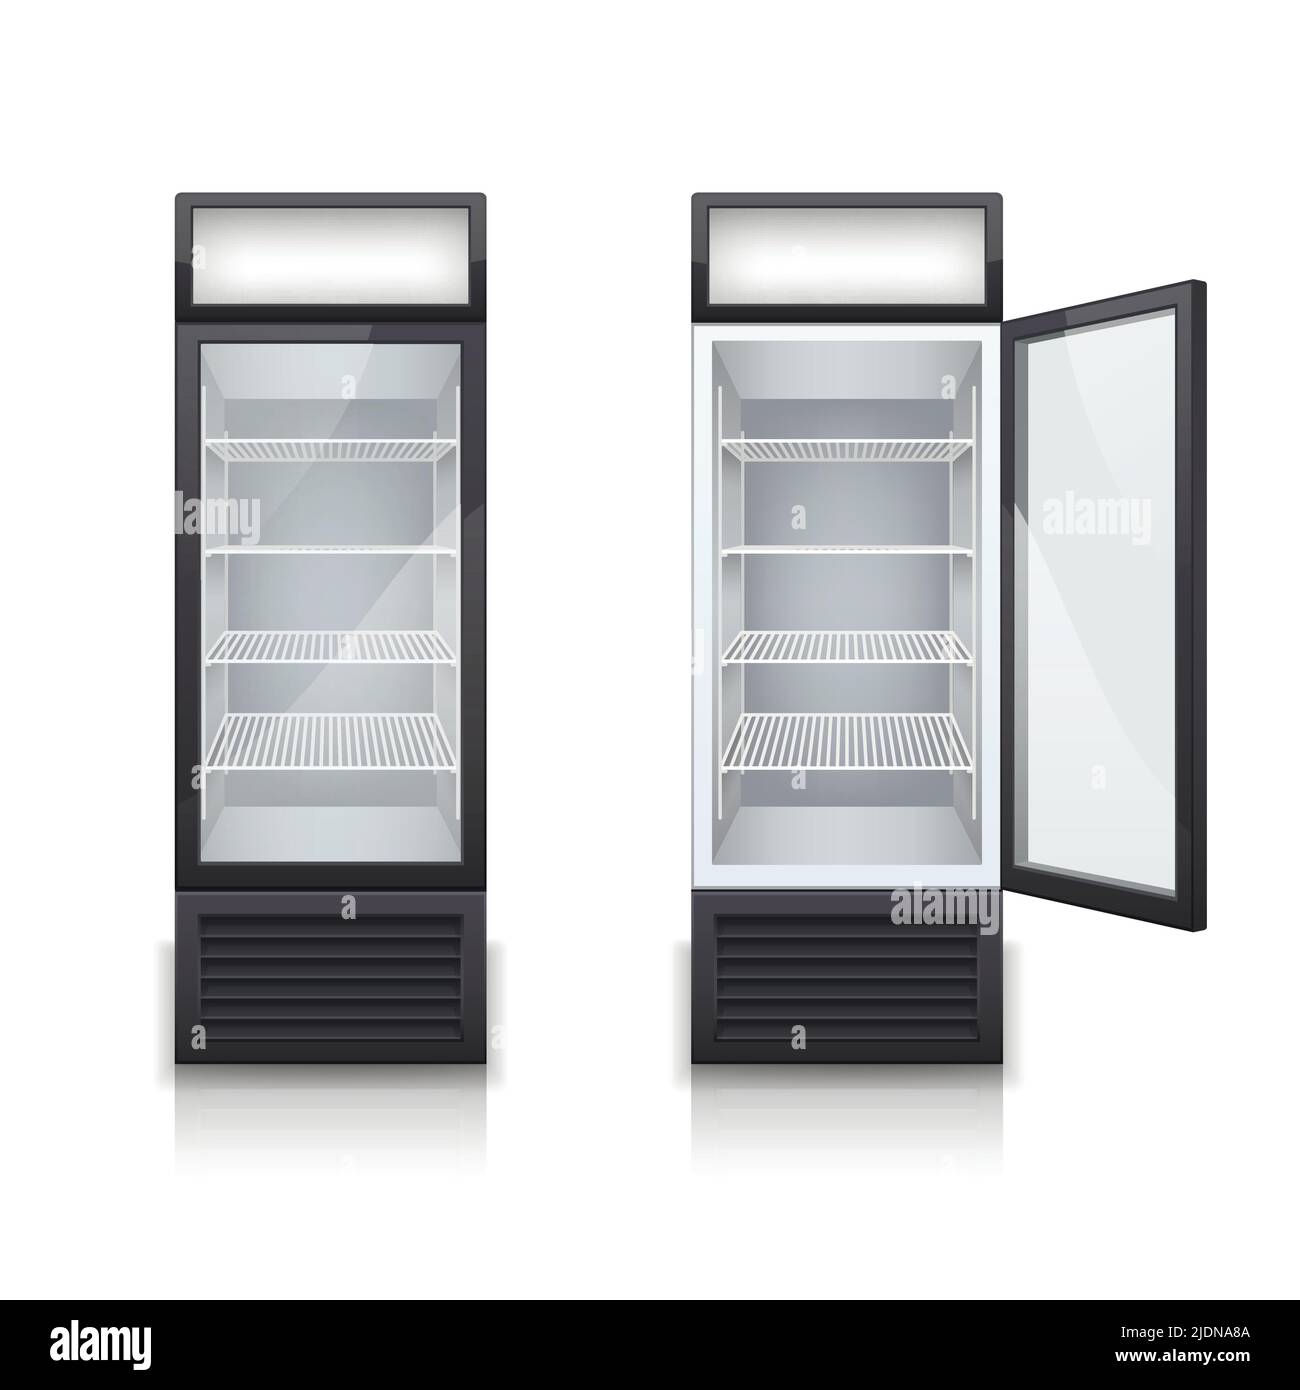 Deux réfrigérateurs à boissons de bar commercial avec une porte ouverte et fermée illustration vectorielle réaliste et isolée Illustration de Vecteur